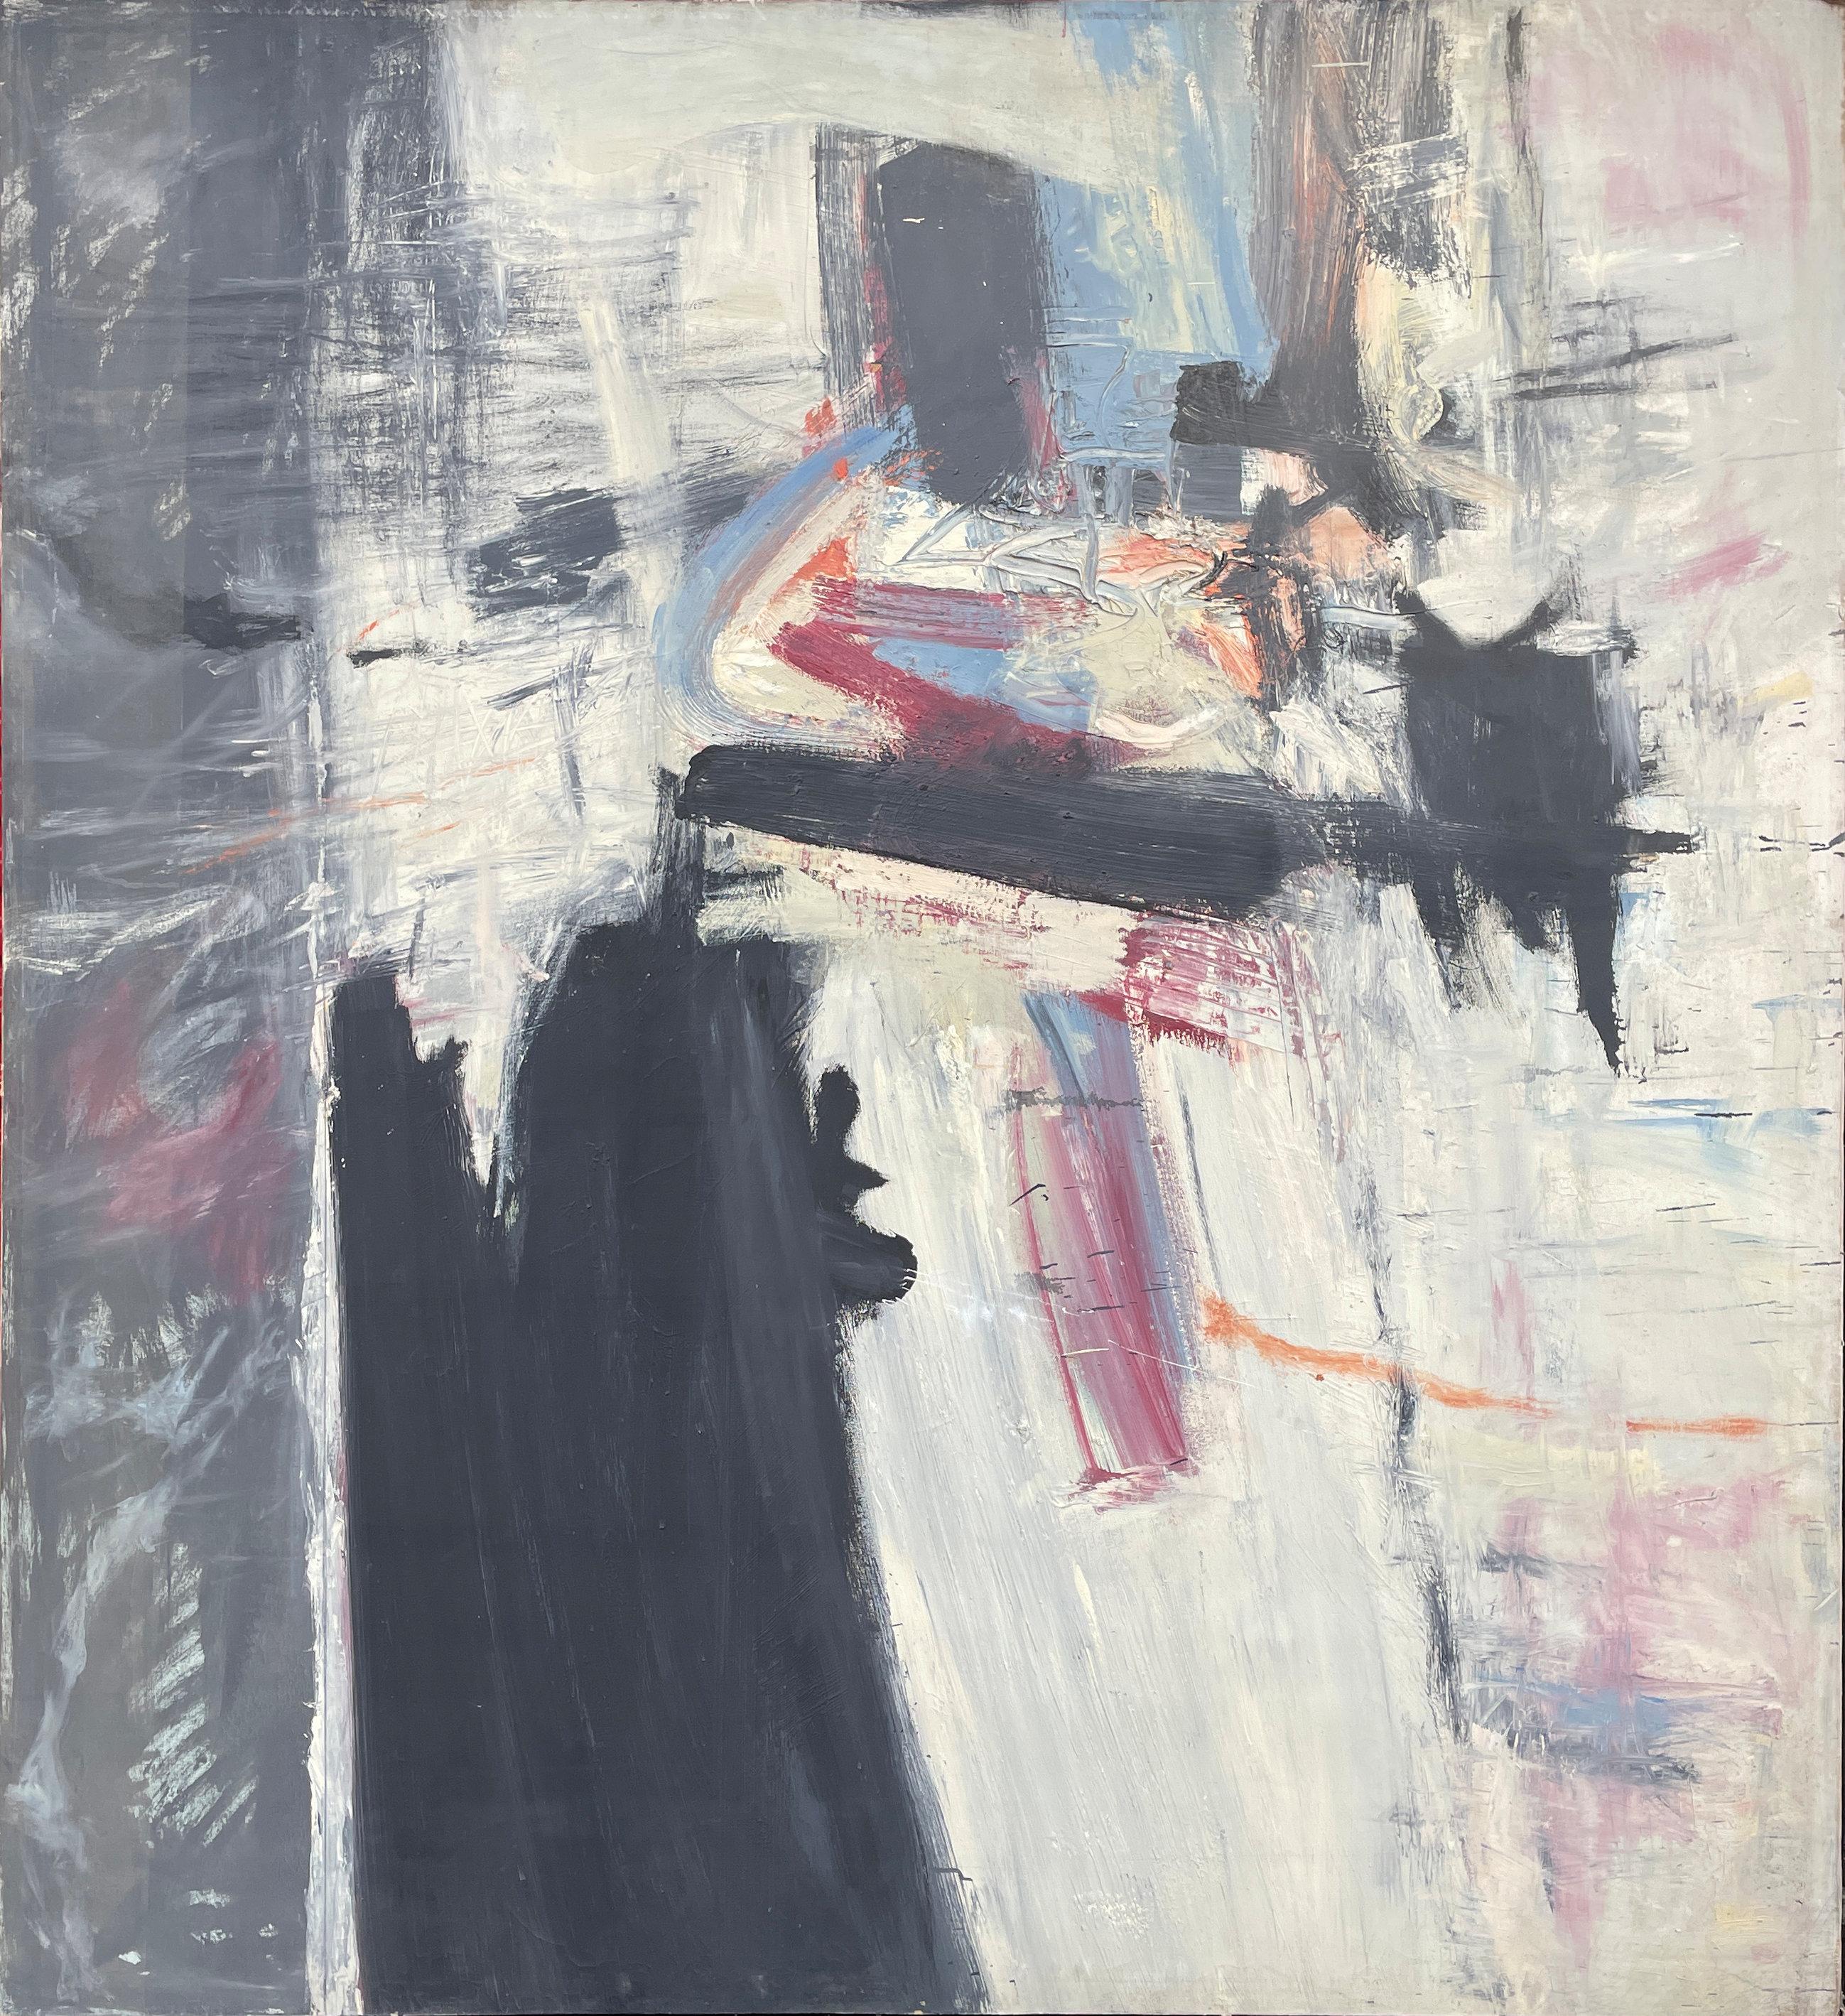 Alan Fenton (1927 - 2000)
Unbetitelt, 1958-1960
Öl auf Leinwand
90 x 84 Zoll

Fentons ruhige und kontemplative ungegenständliche Gemälde und Zeichnungen waren weithin bekannt für ihre anspruchsvollen, aber unaufdringlichen Mittel, die ein ernstes